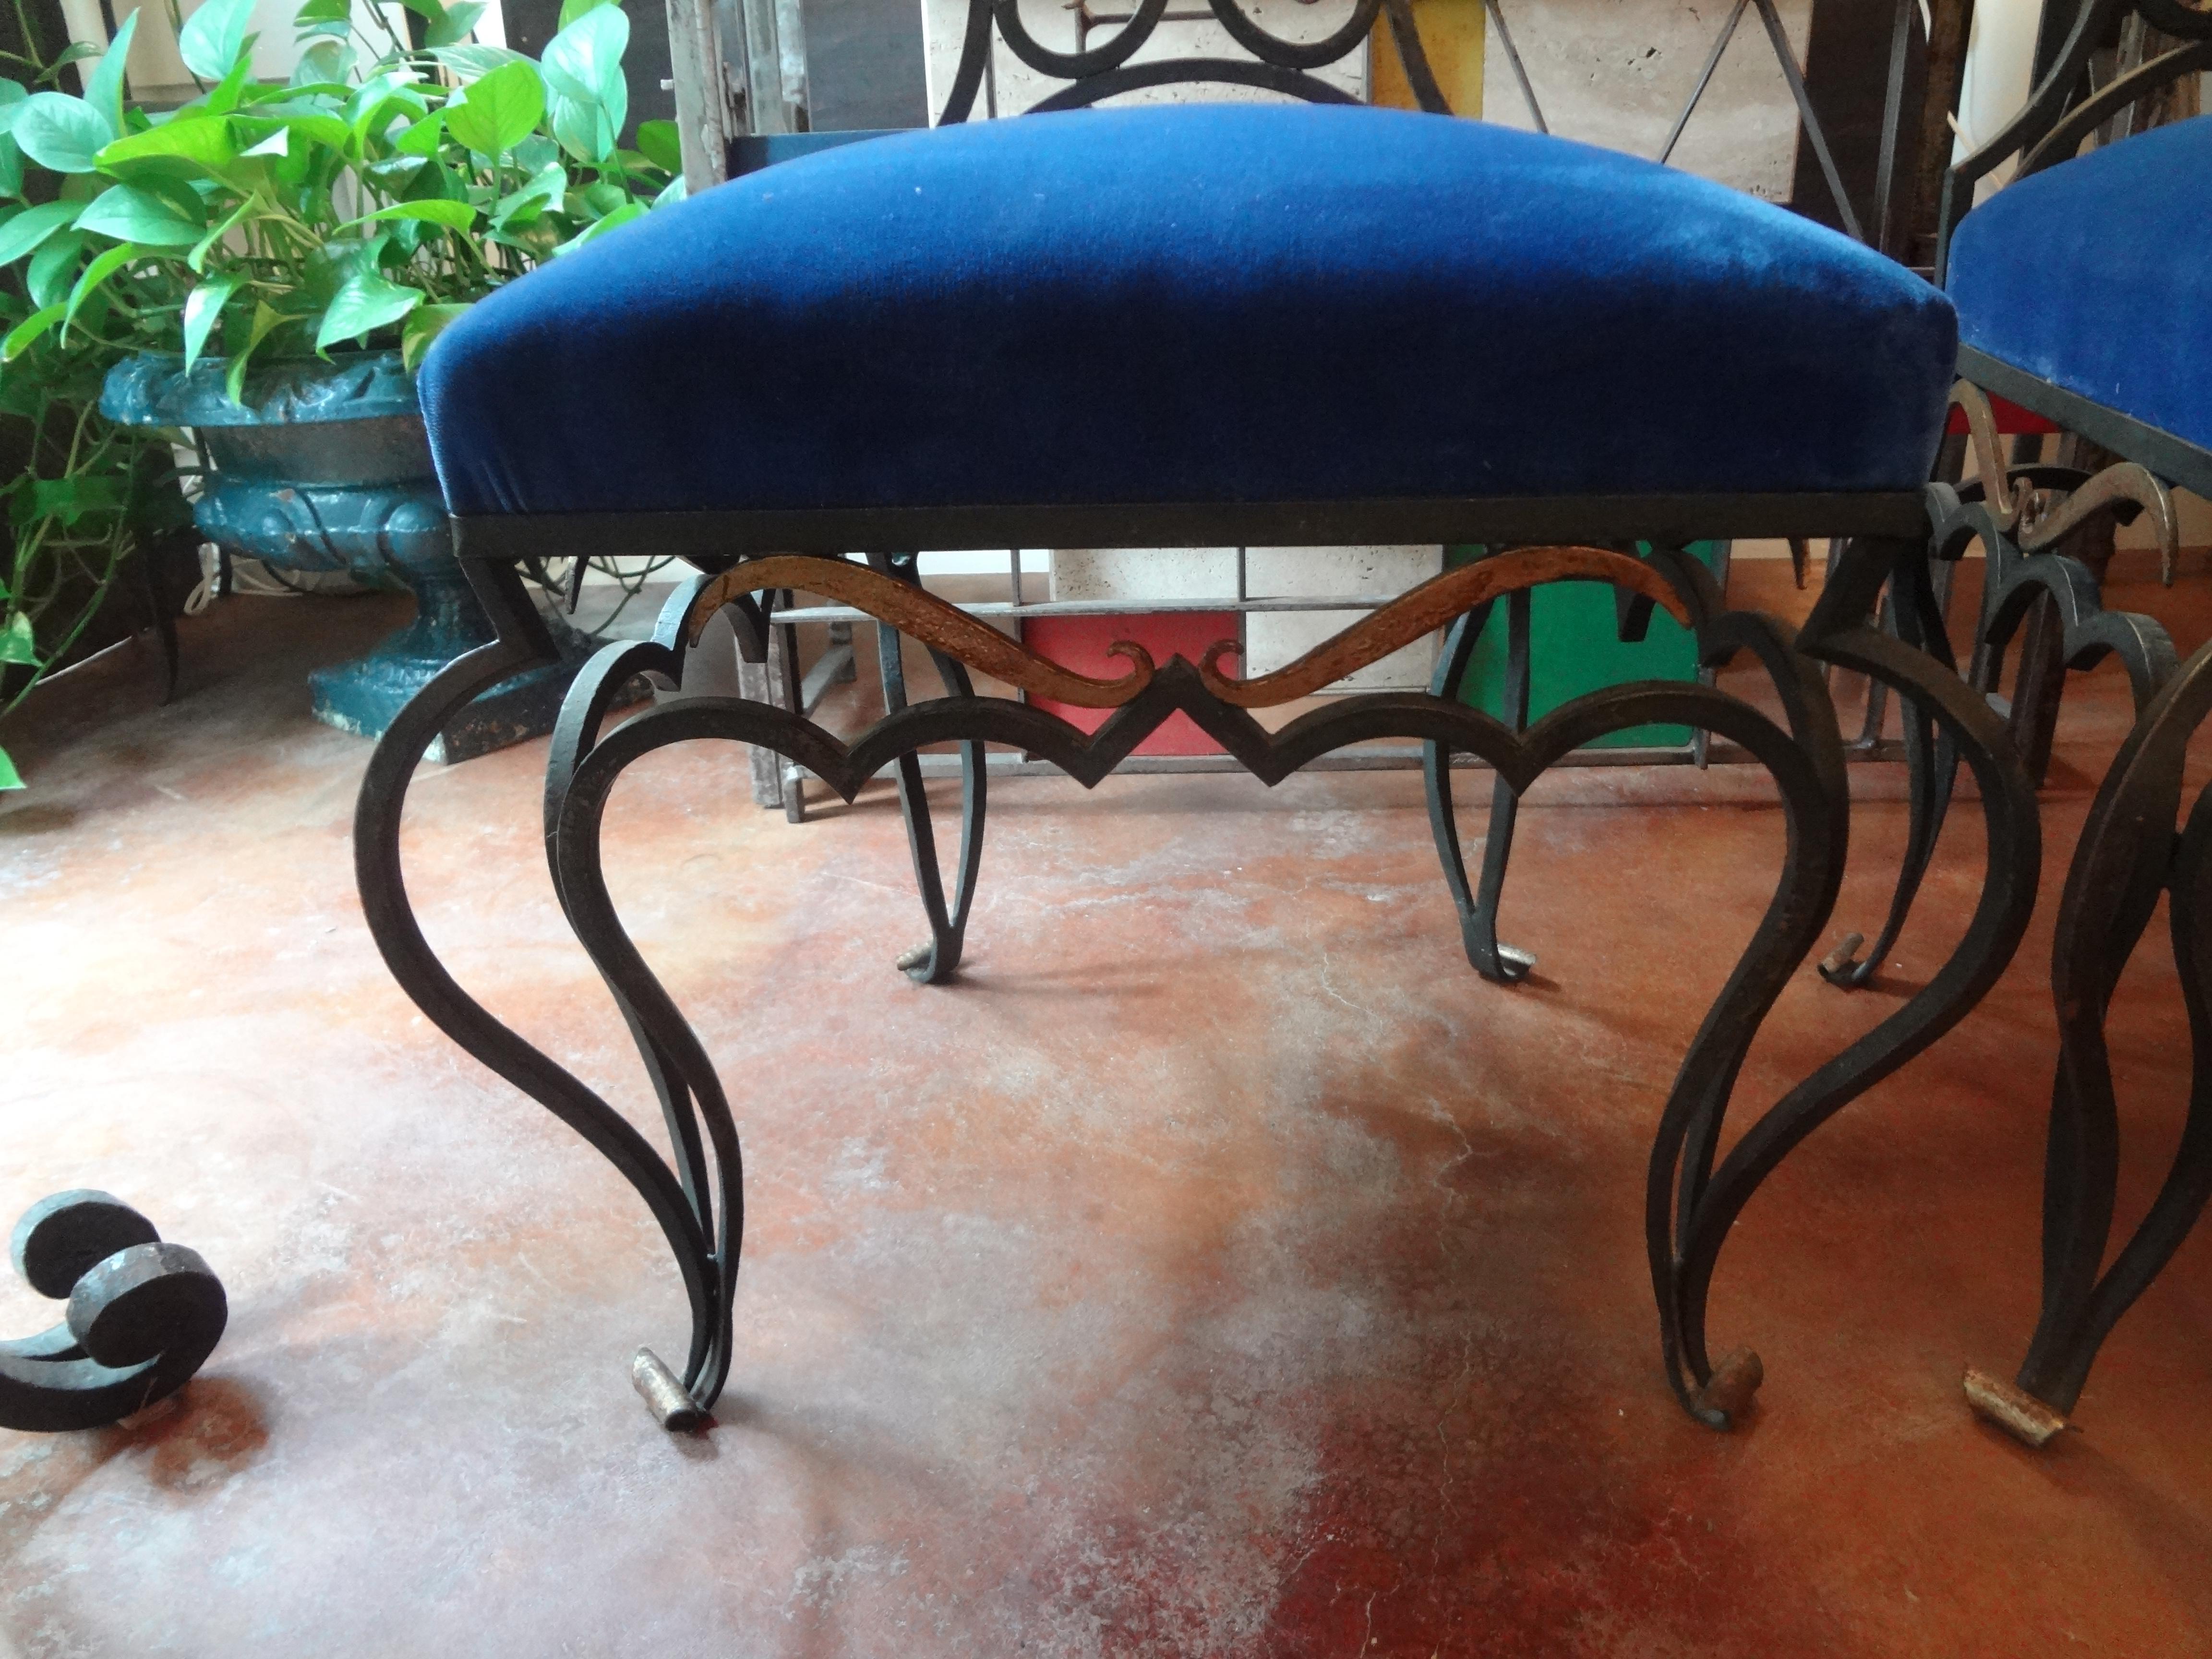 Superbe paire de chaises latérales en fer forgé attribuées à Jean-Charles Moreux. Ces fabuleuses chaises en fer forgé forgées à la main ont juste une touche de dorure et ont été nouvellement tapissées dans un beau velours bleu. Ces élégantes chaises